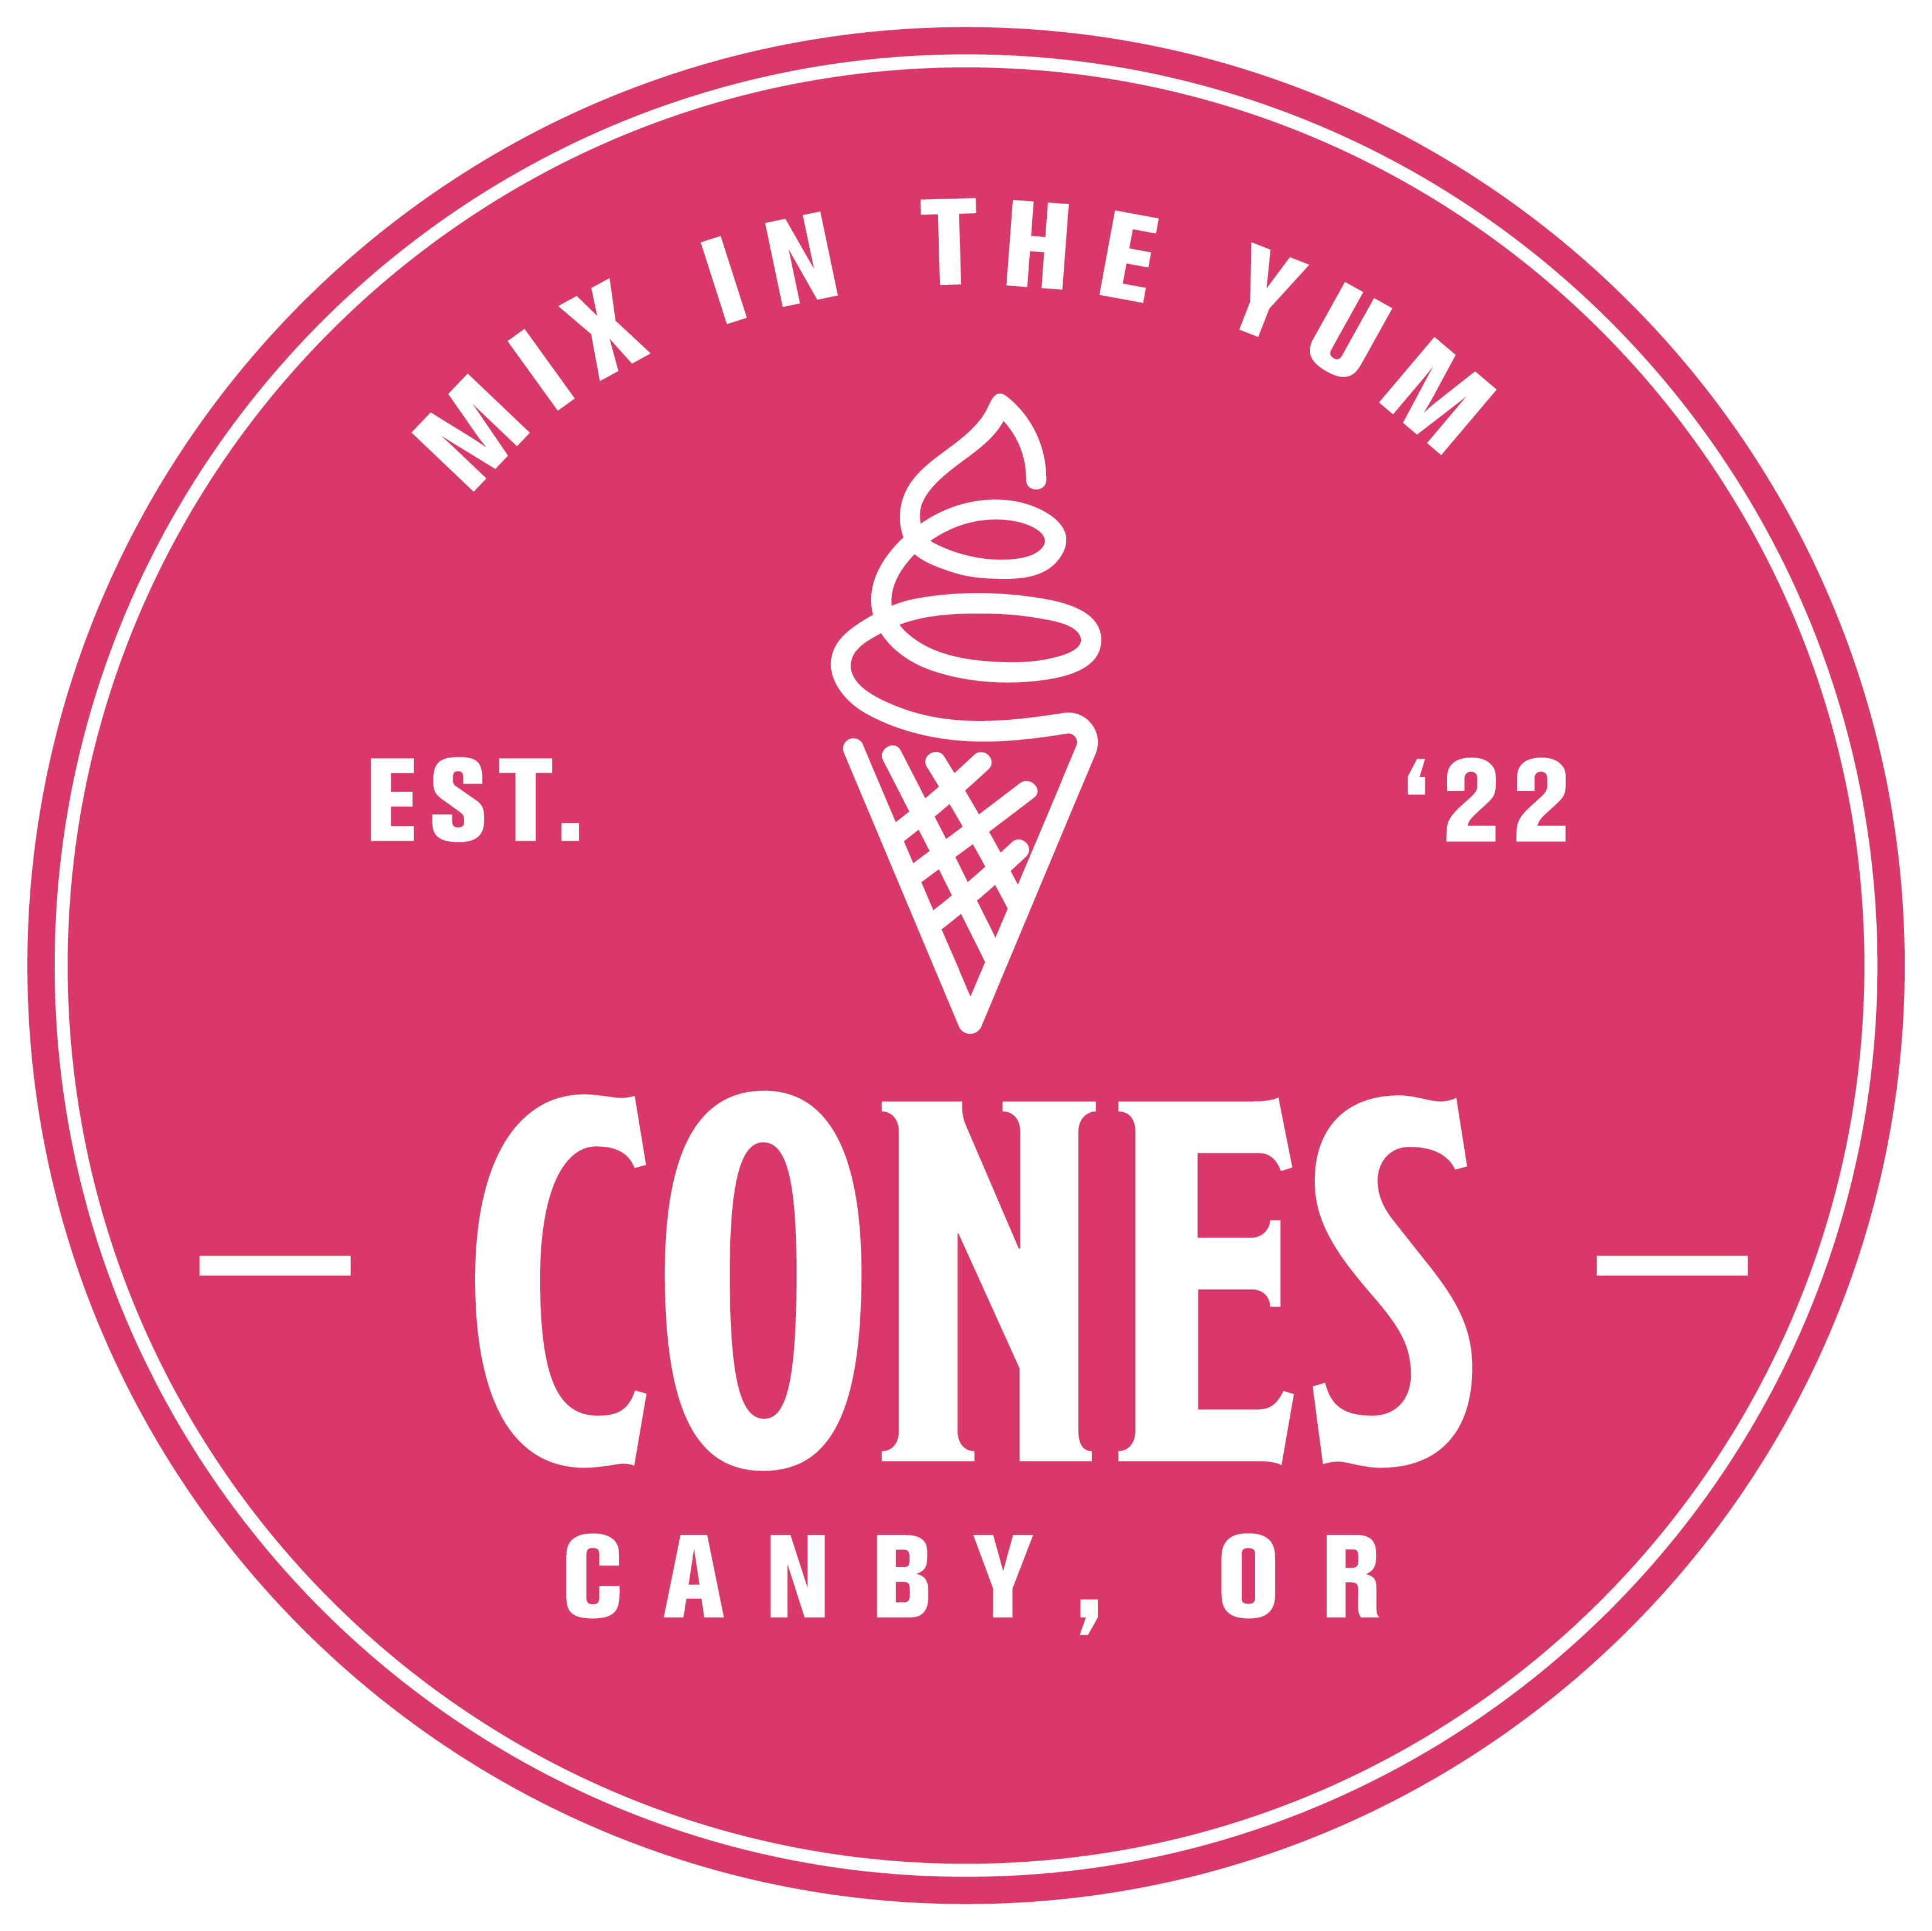 CONES - Cones